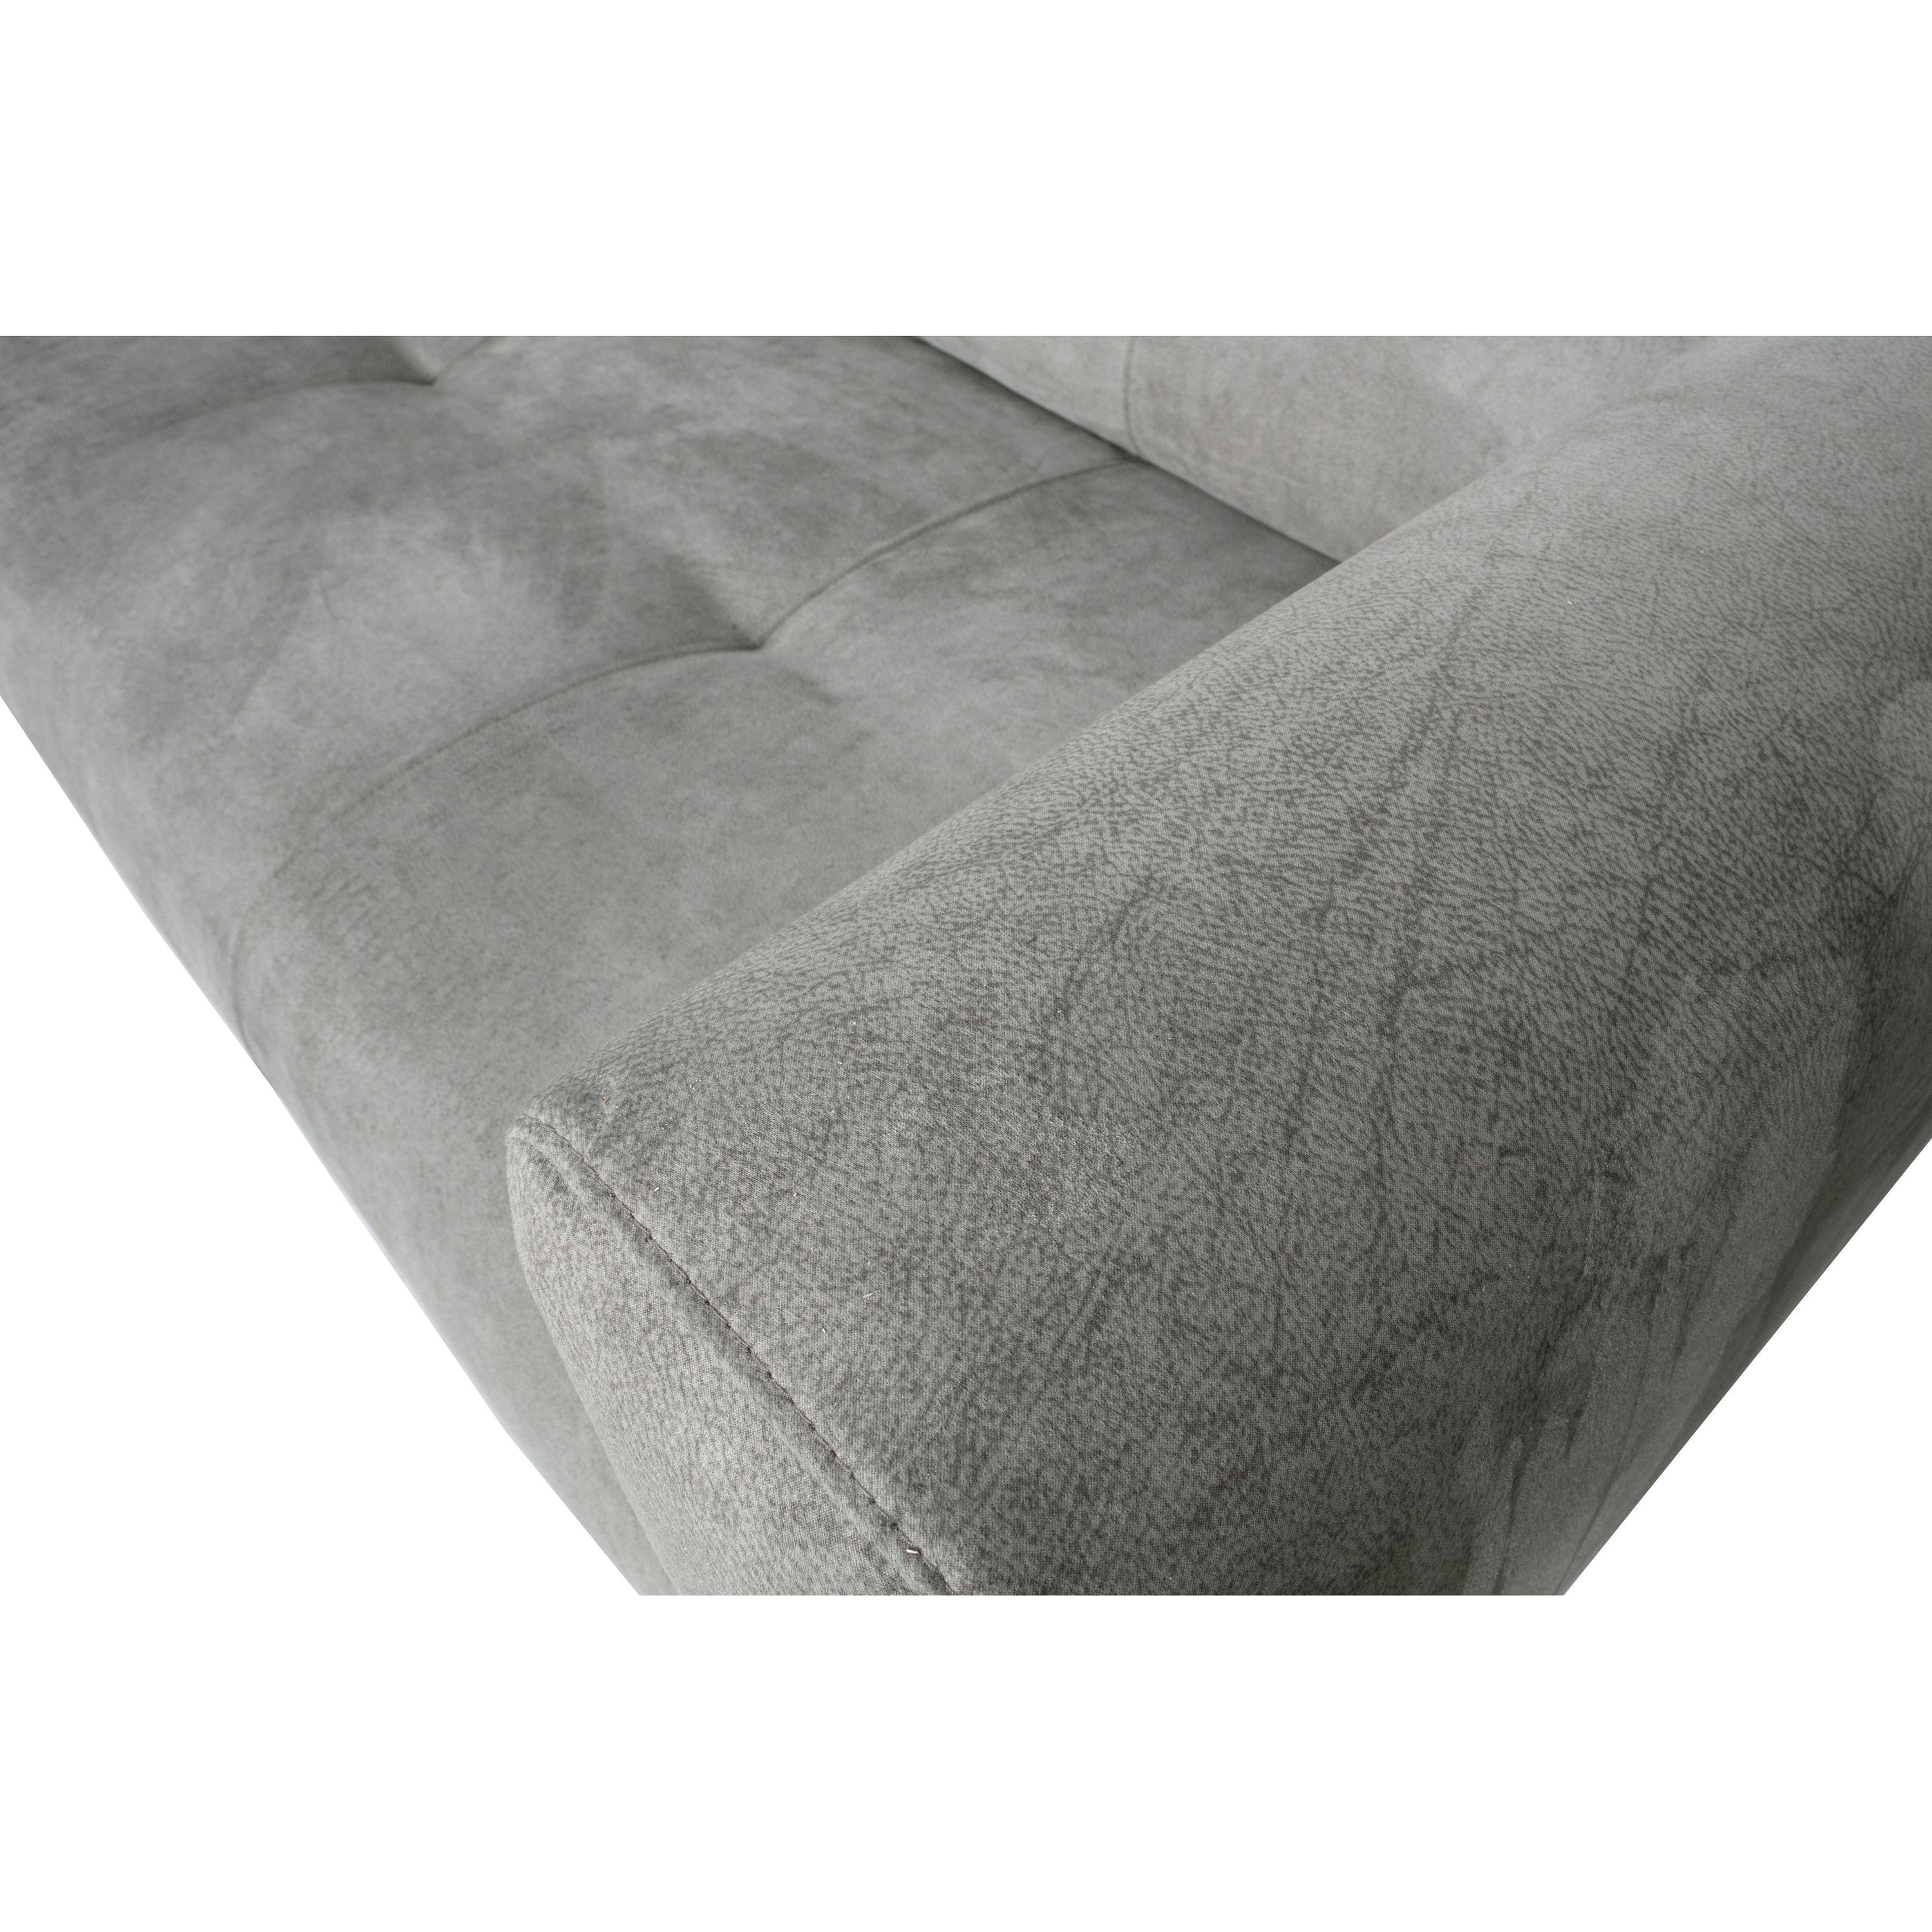 "Skin" 4-ių vietų sofa, 250 cm, šviesiai pilka